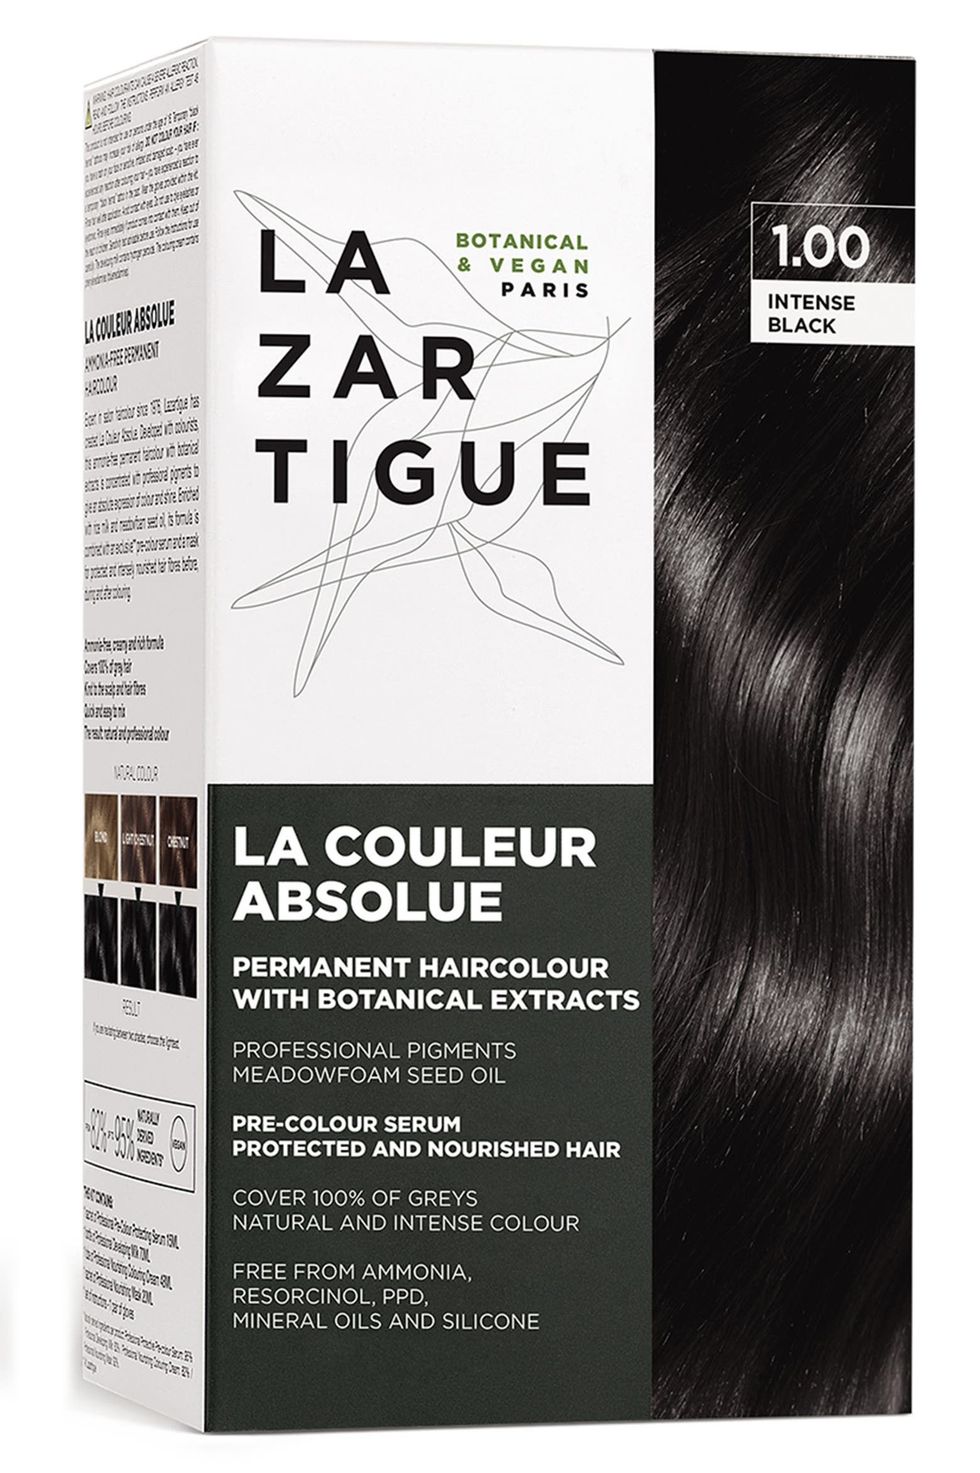 La Couleur Absolue Permanent Hair Color Kit in Intense Black